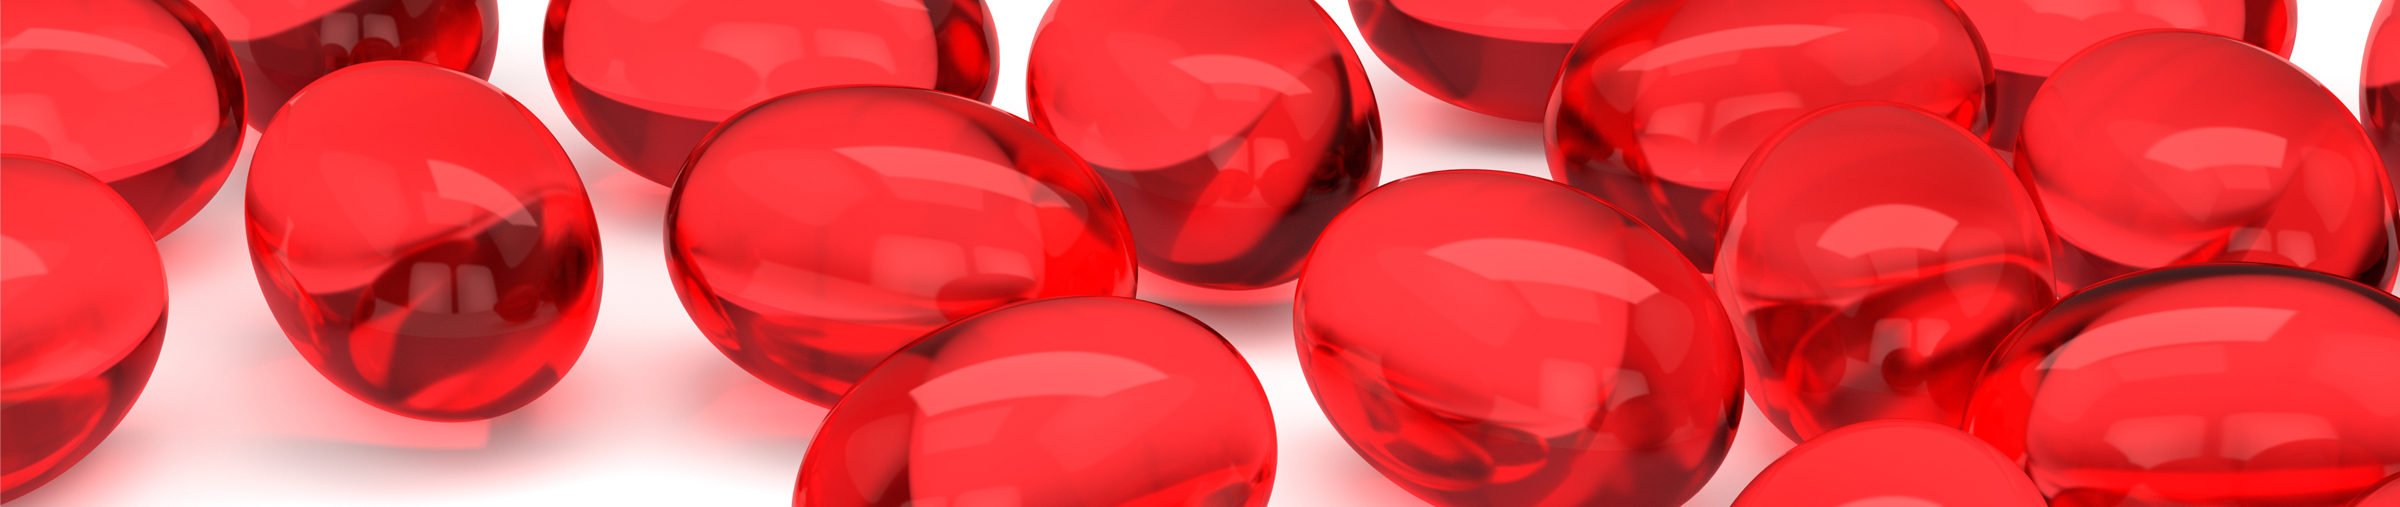 red liquid gel caps